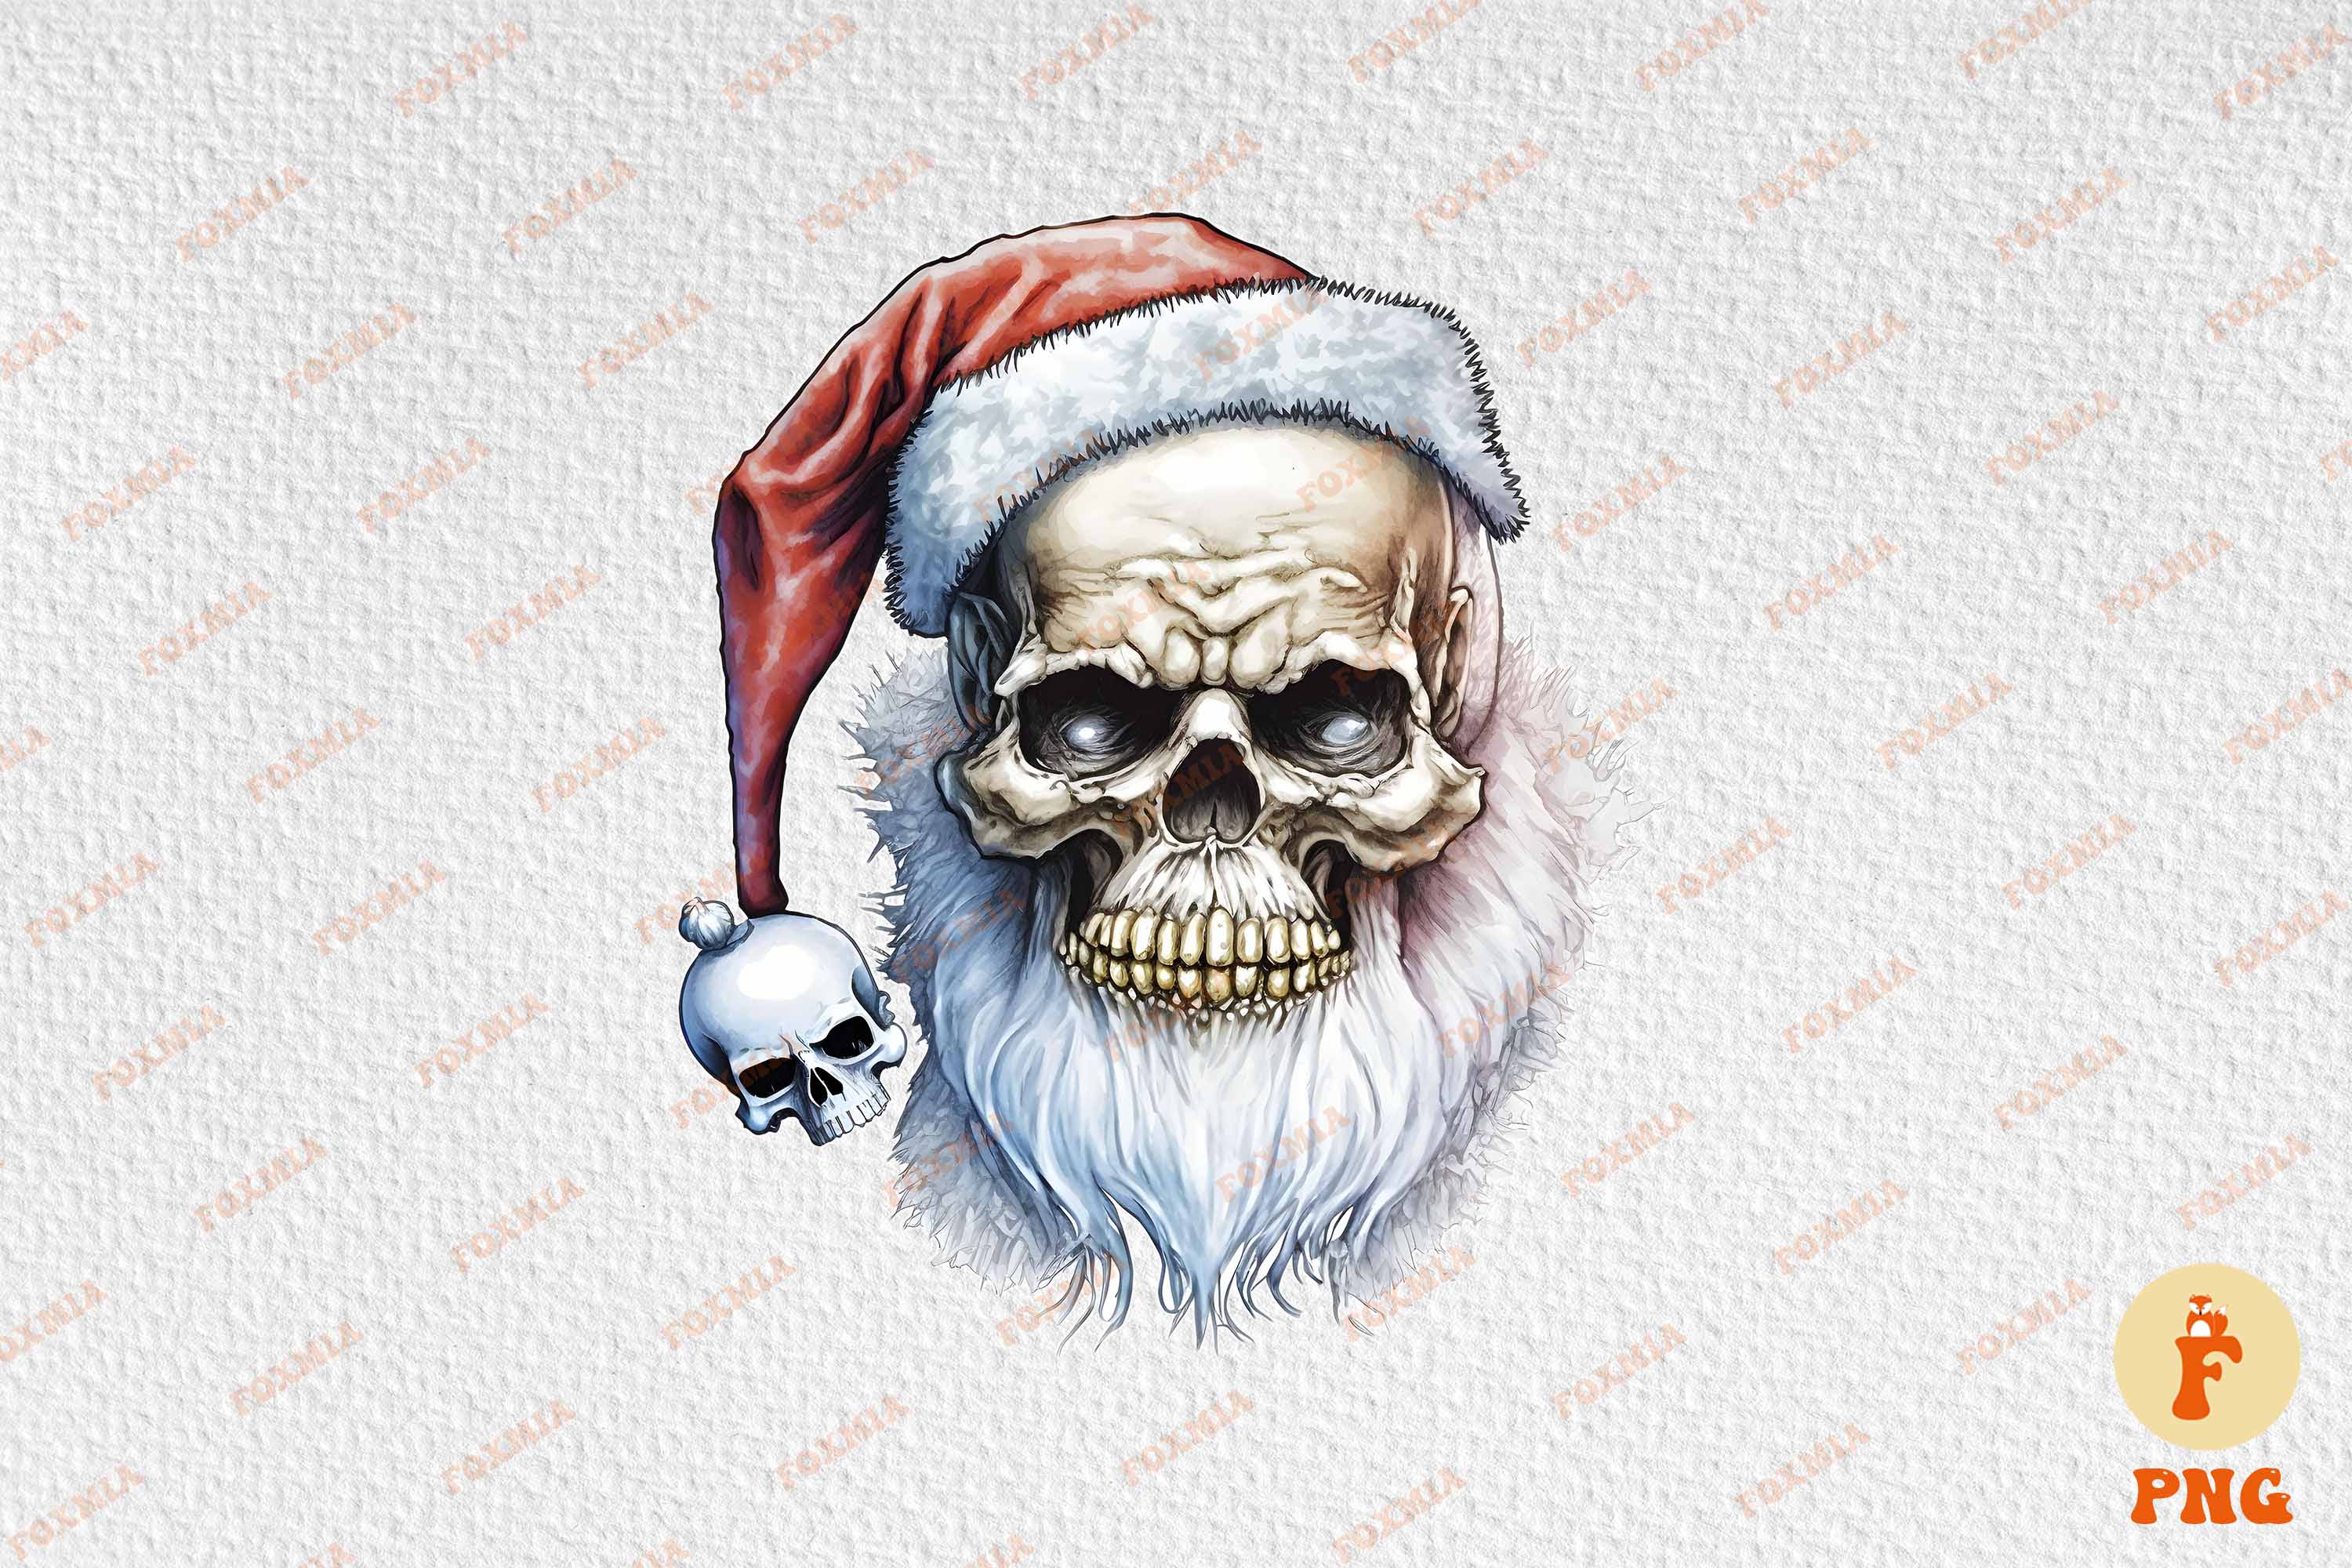 Adorable image of Santa's skull.